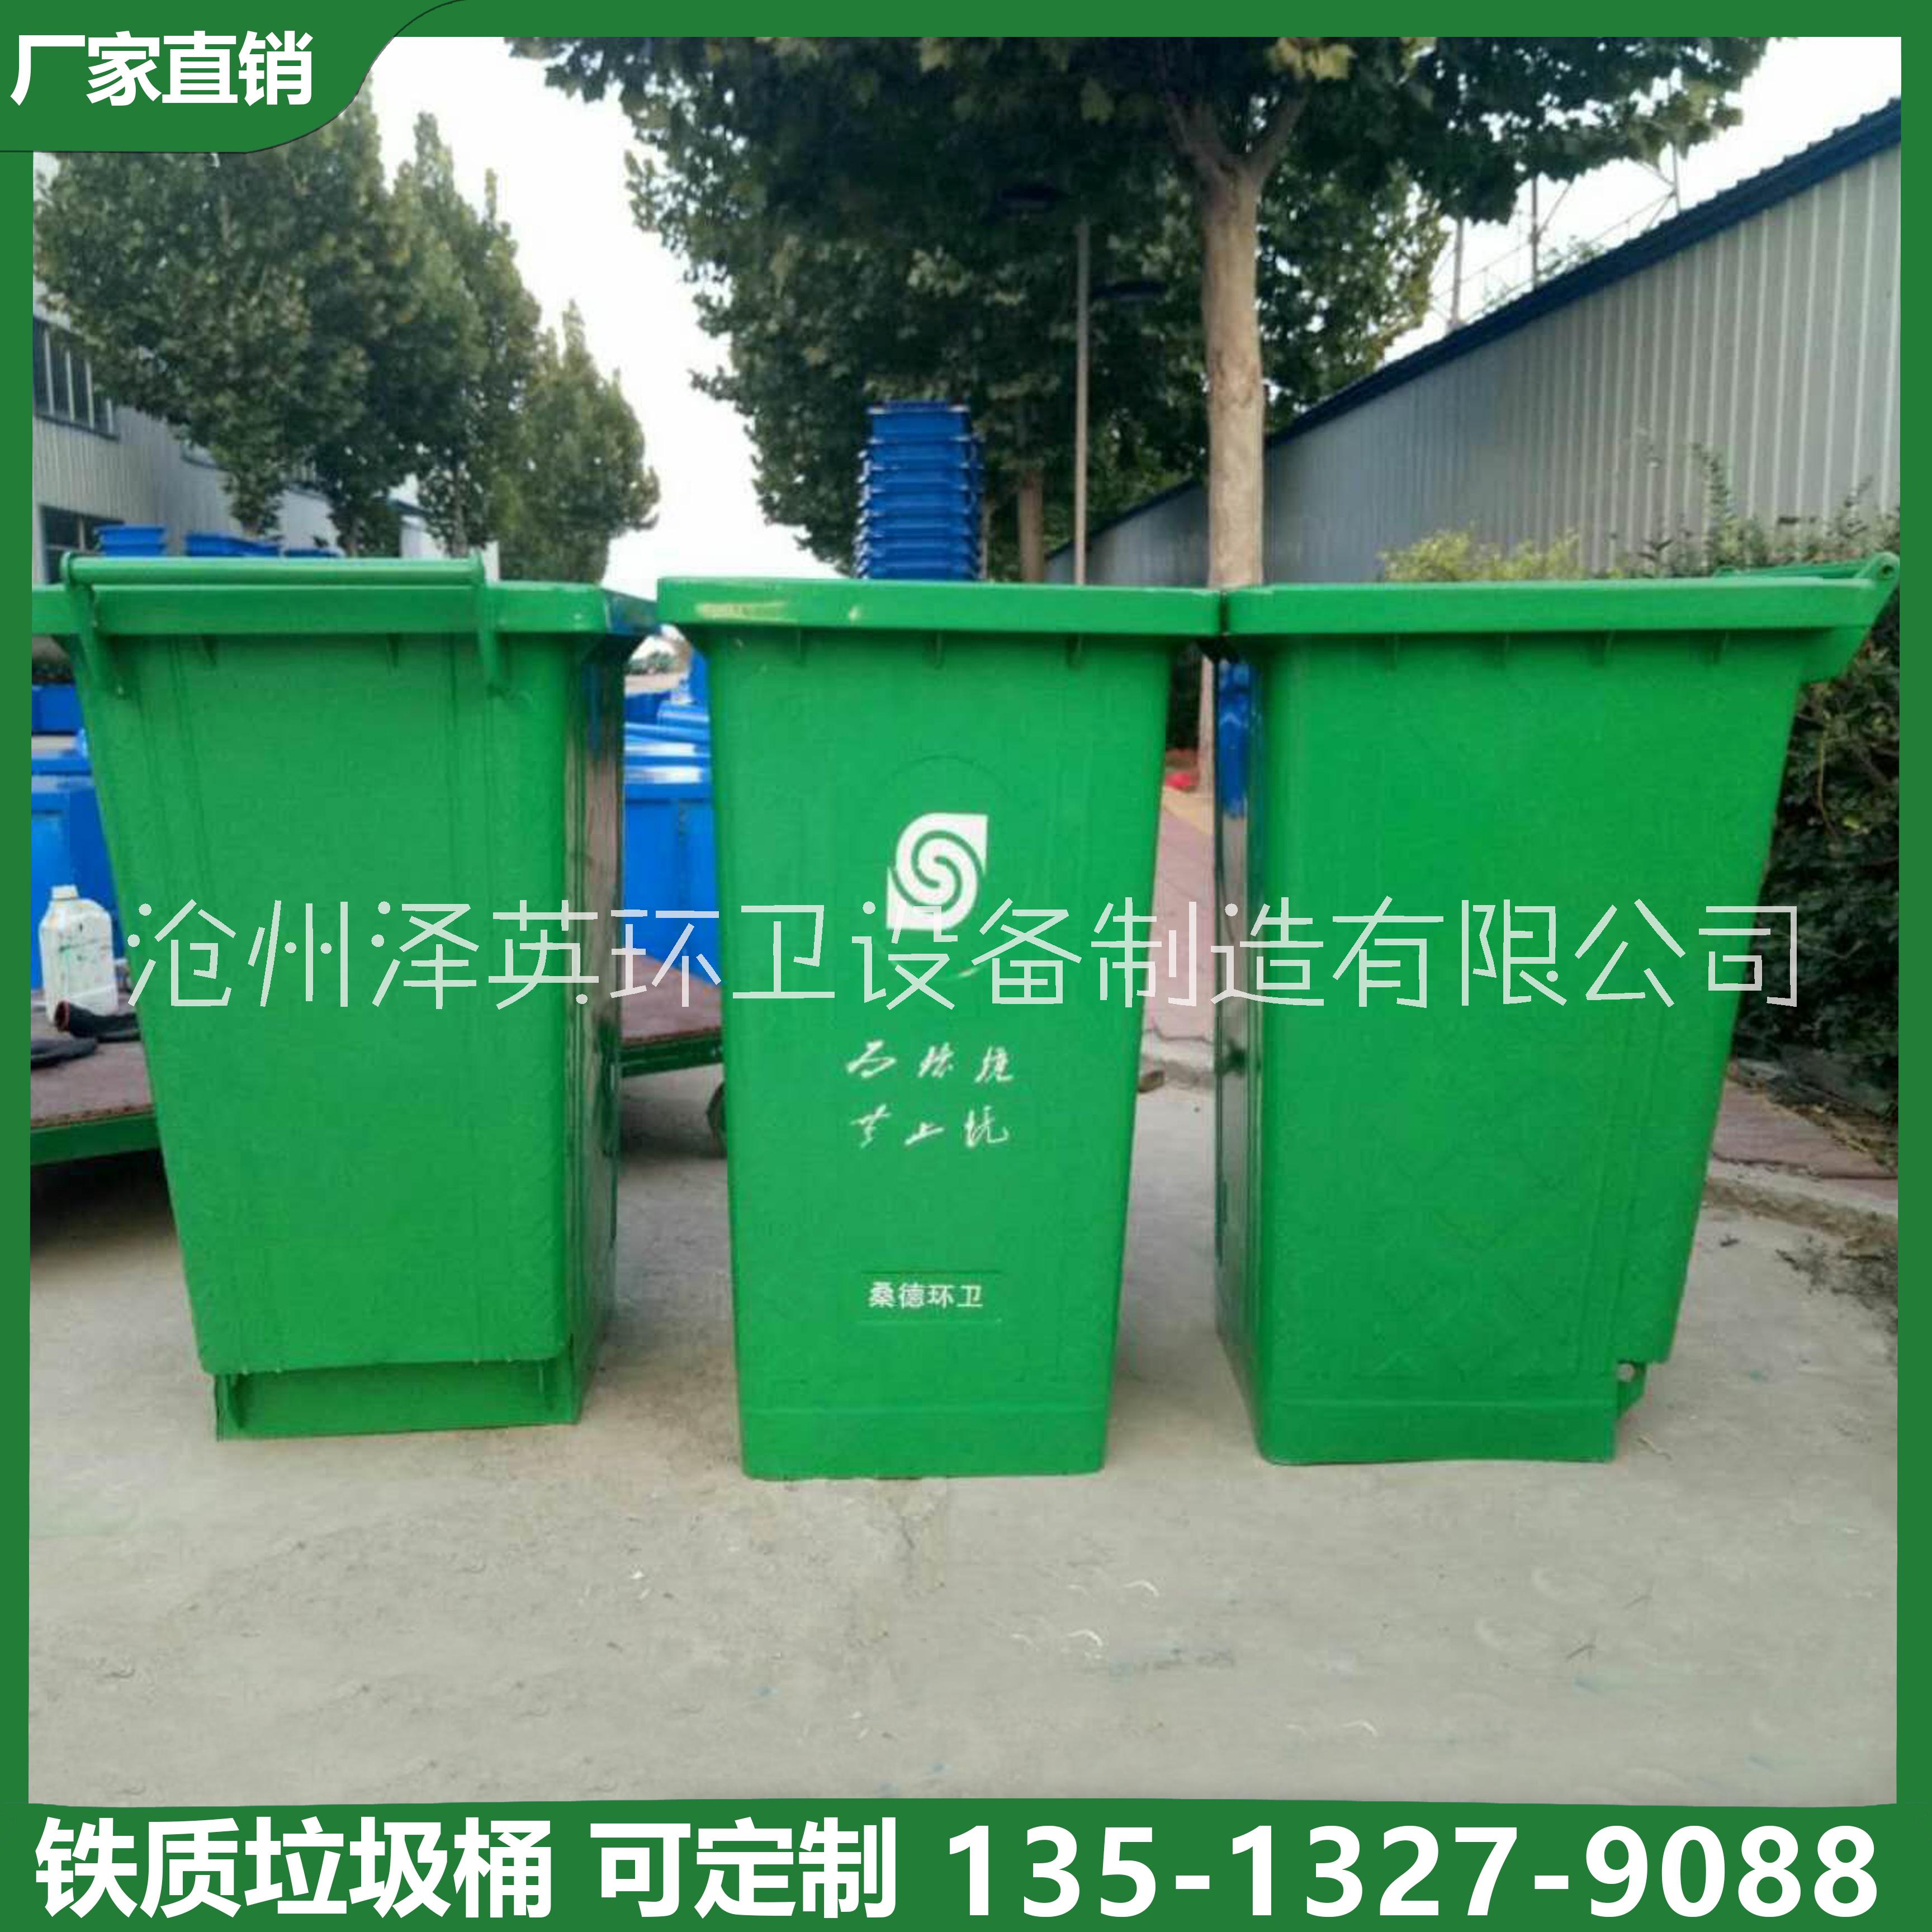 垃圾桶240l 240L铁质挂车垃圾桶镀锌垃圾桶分类垃圾桶